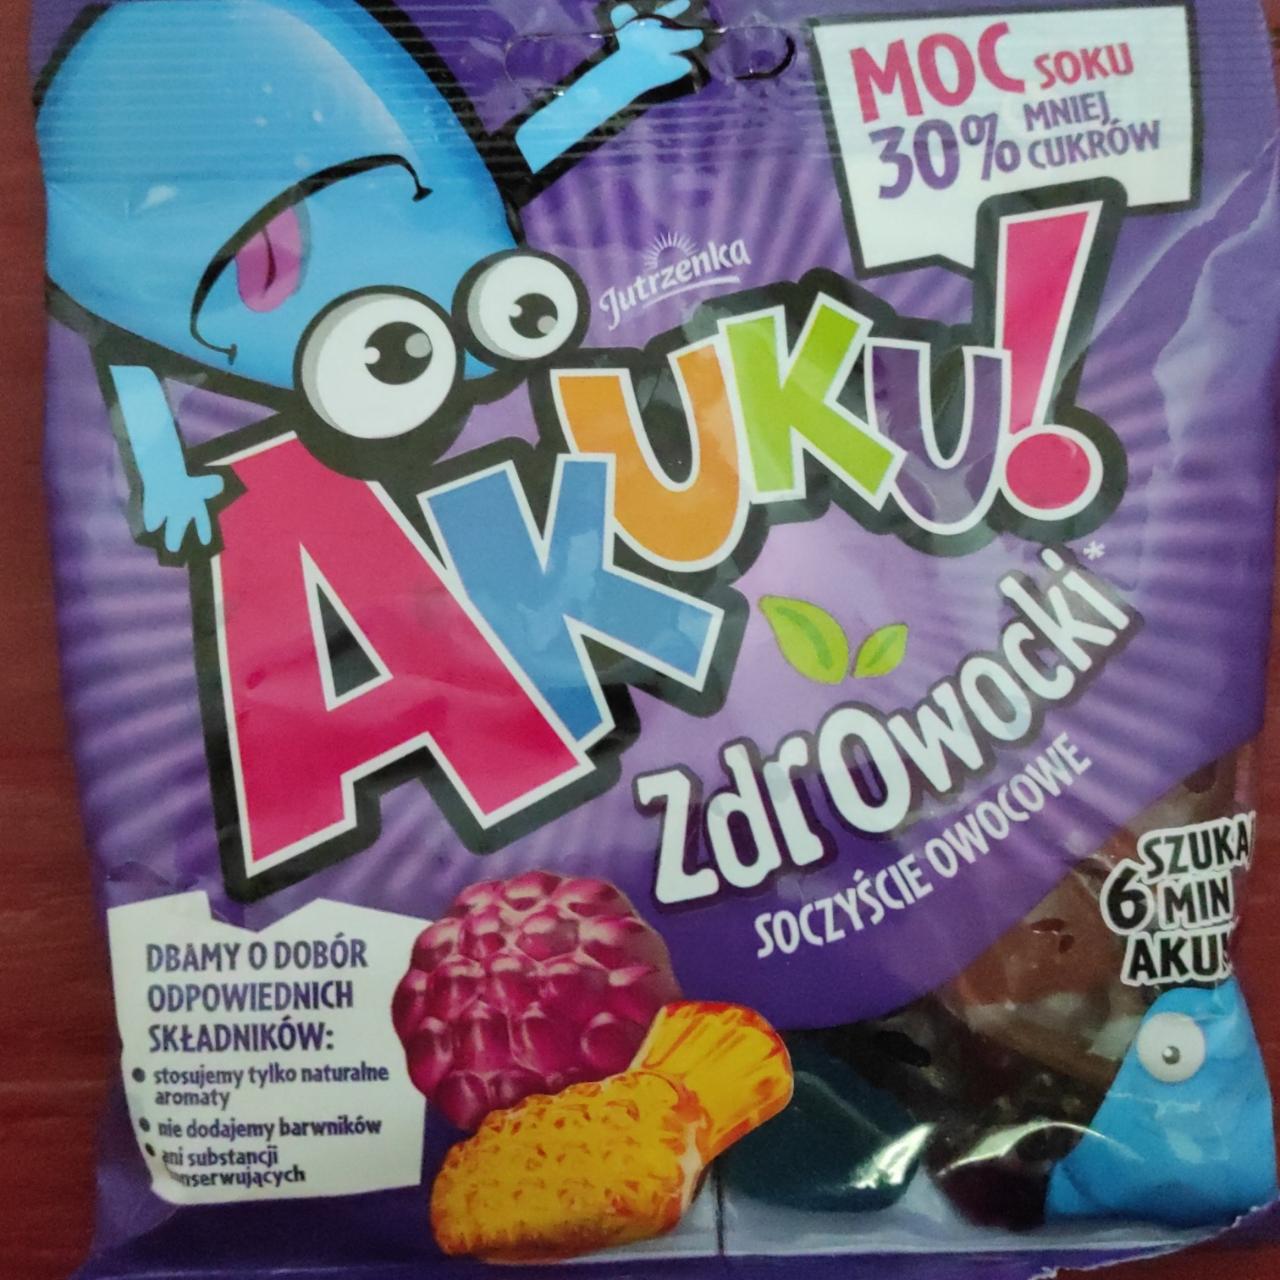 Фото - Жувальні цукерки з соком Zdrowocki Akuku!